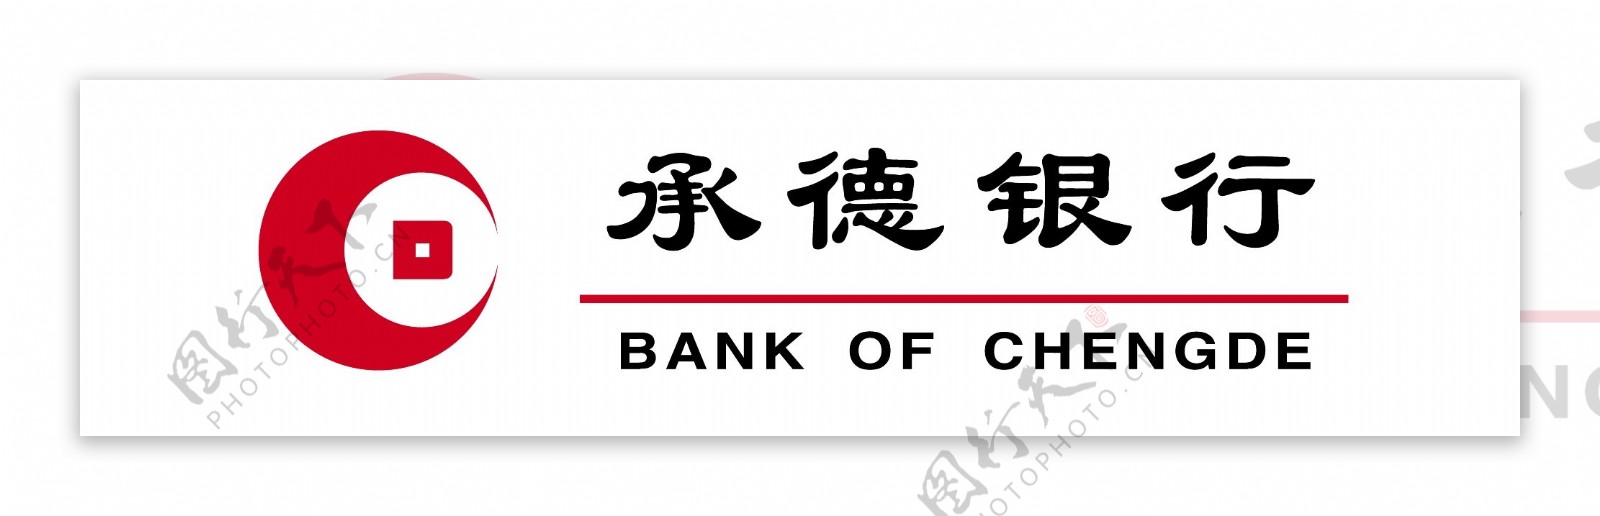 承德银行logo标志